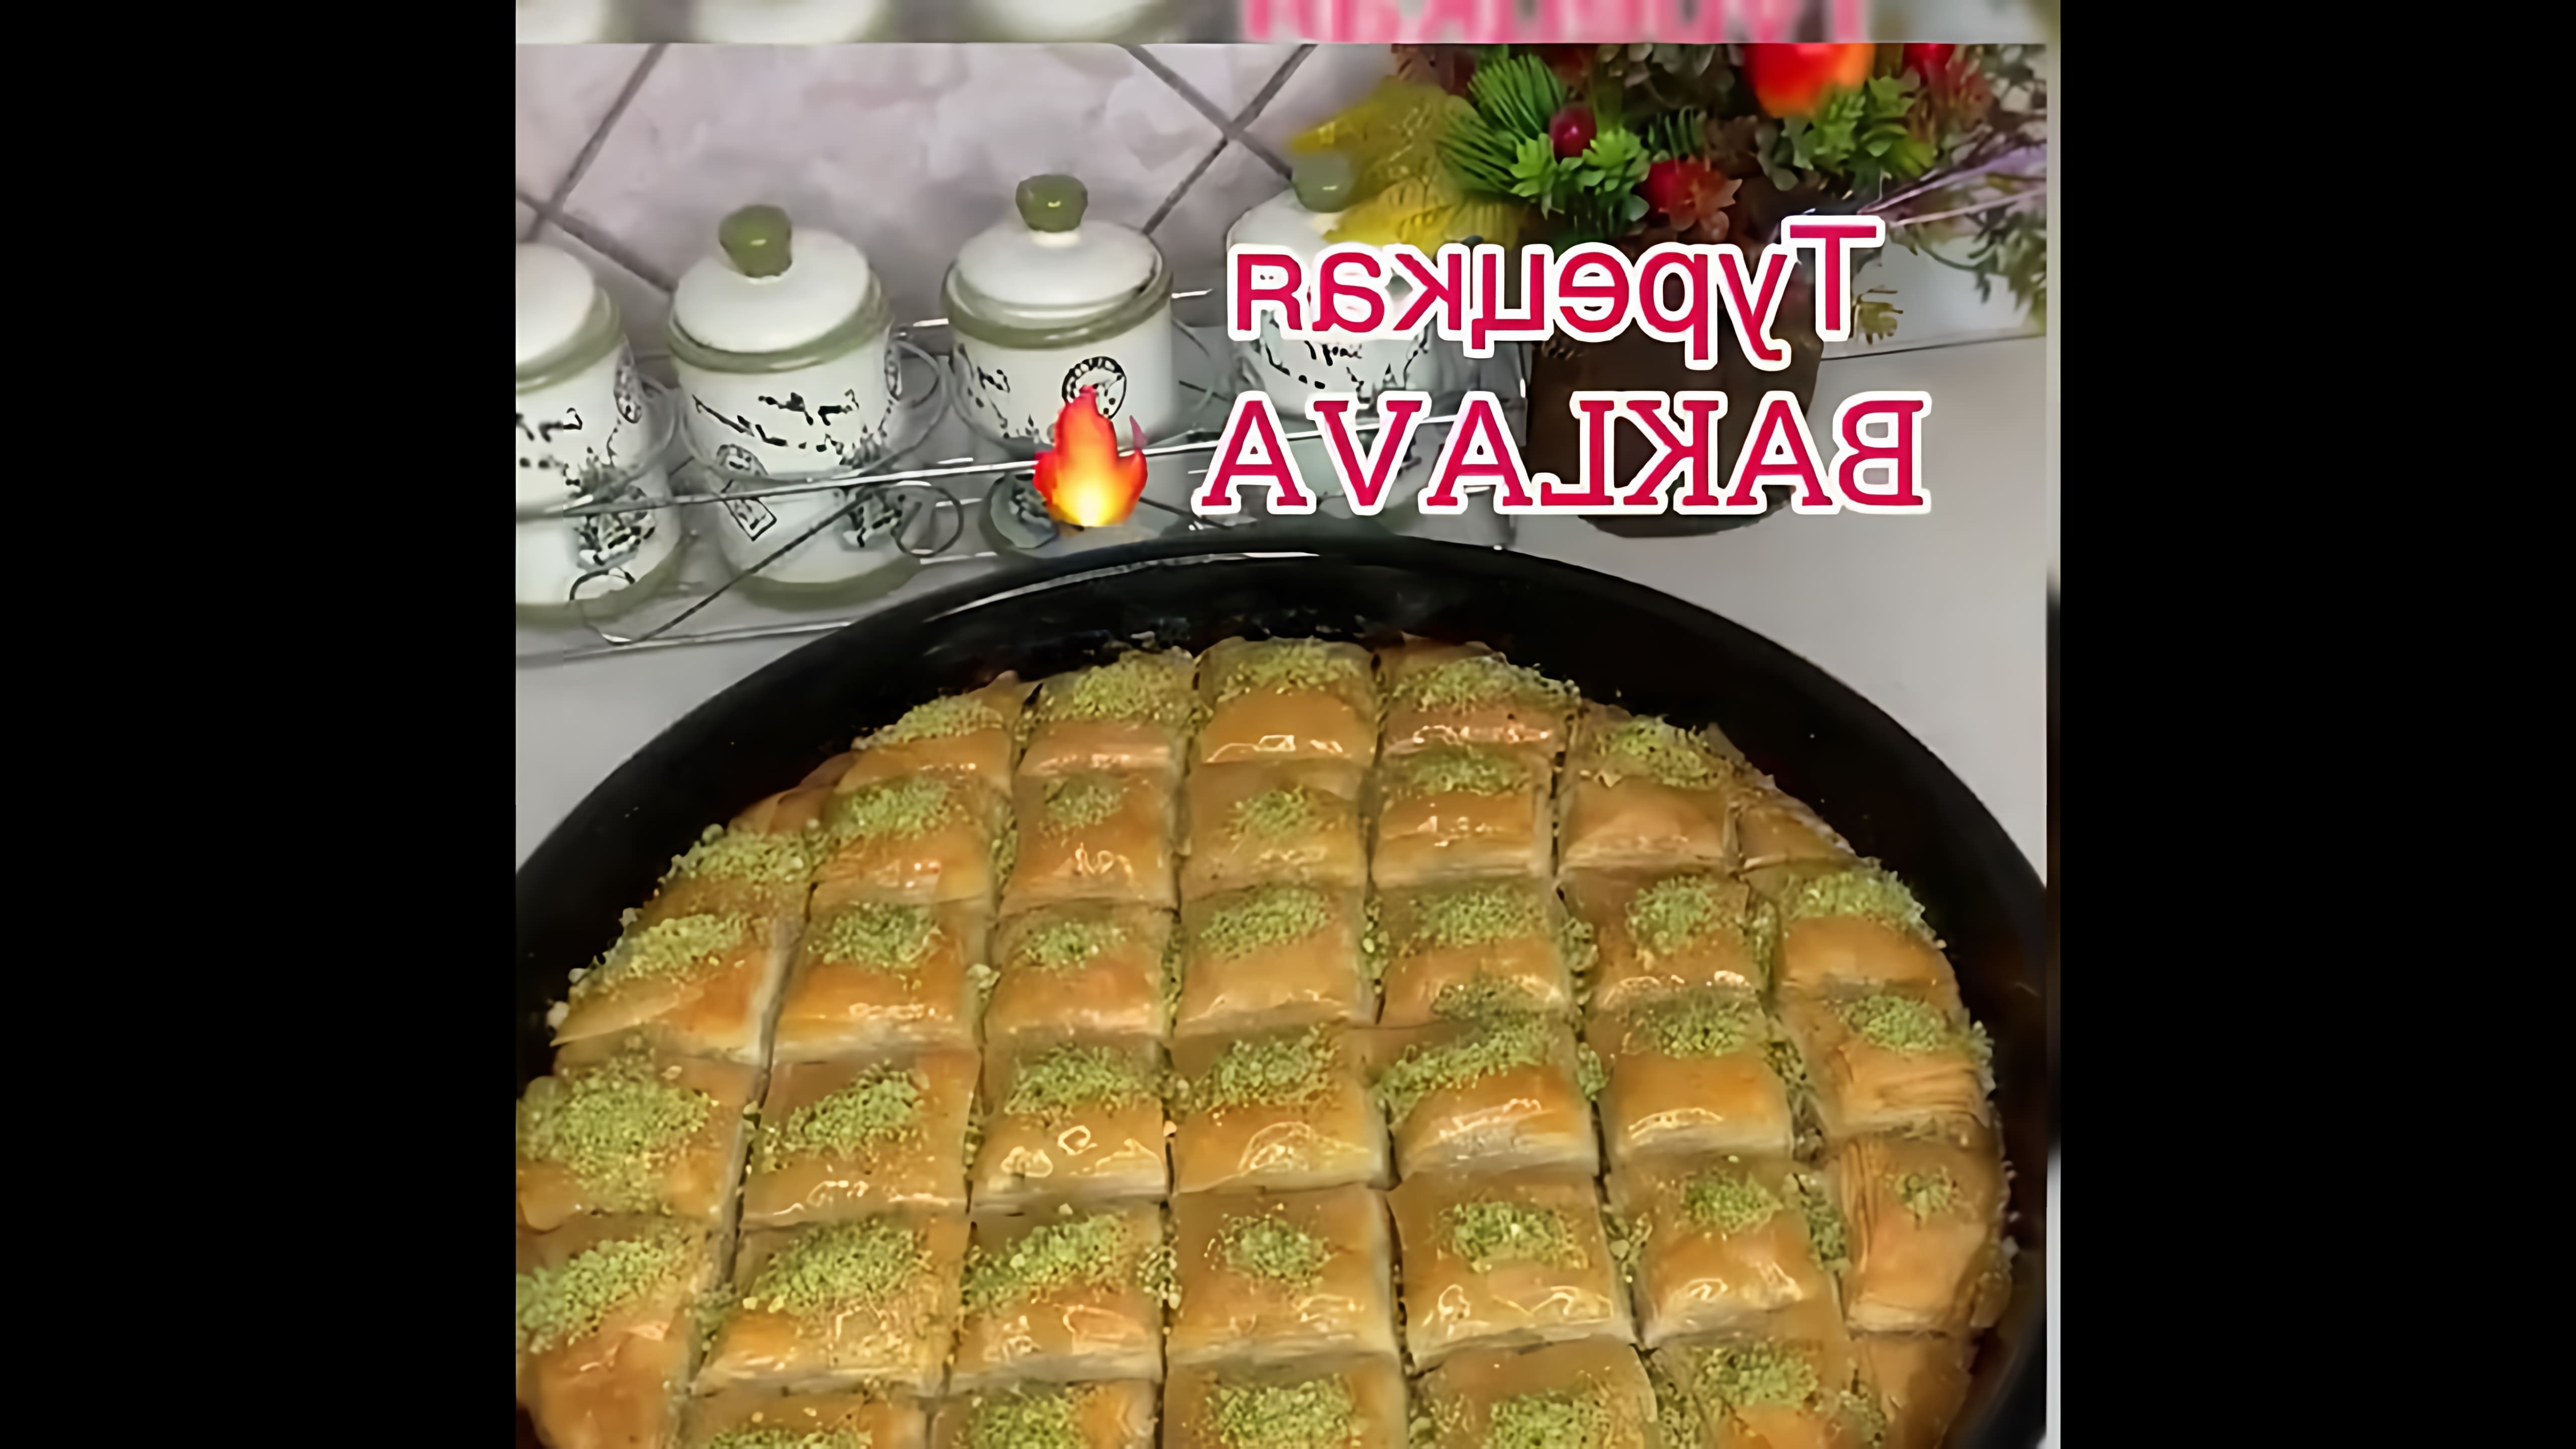 В данном видео демонстрируется рецепт приготовления турецкой пахлавы